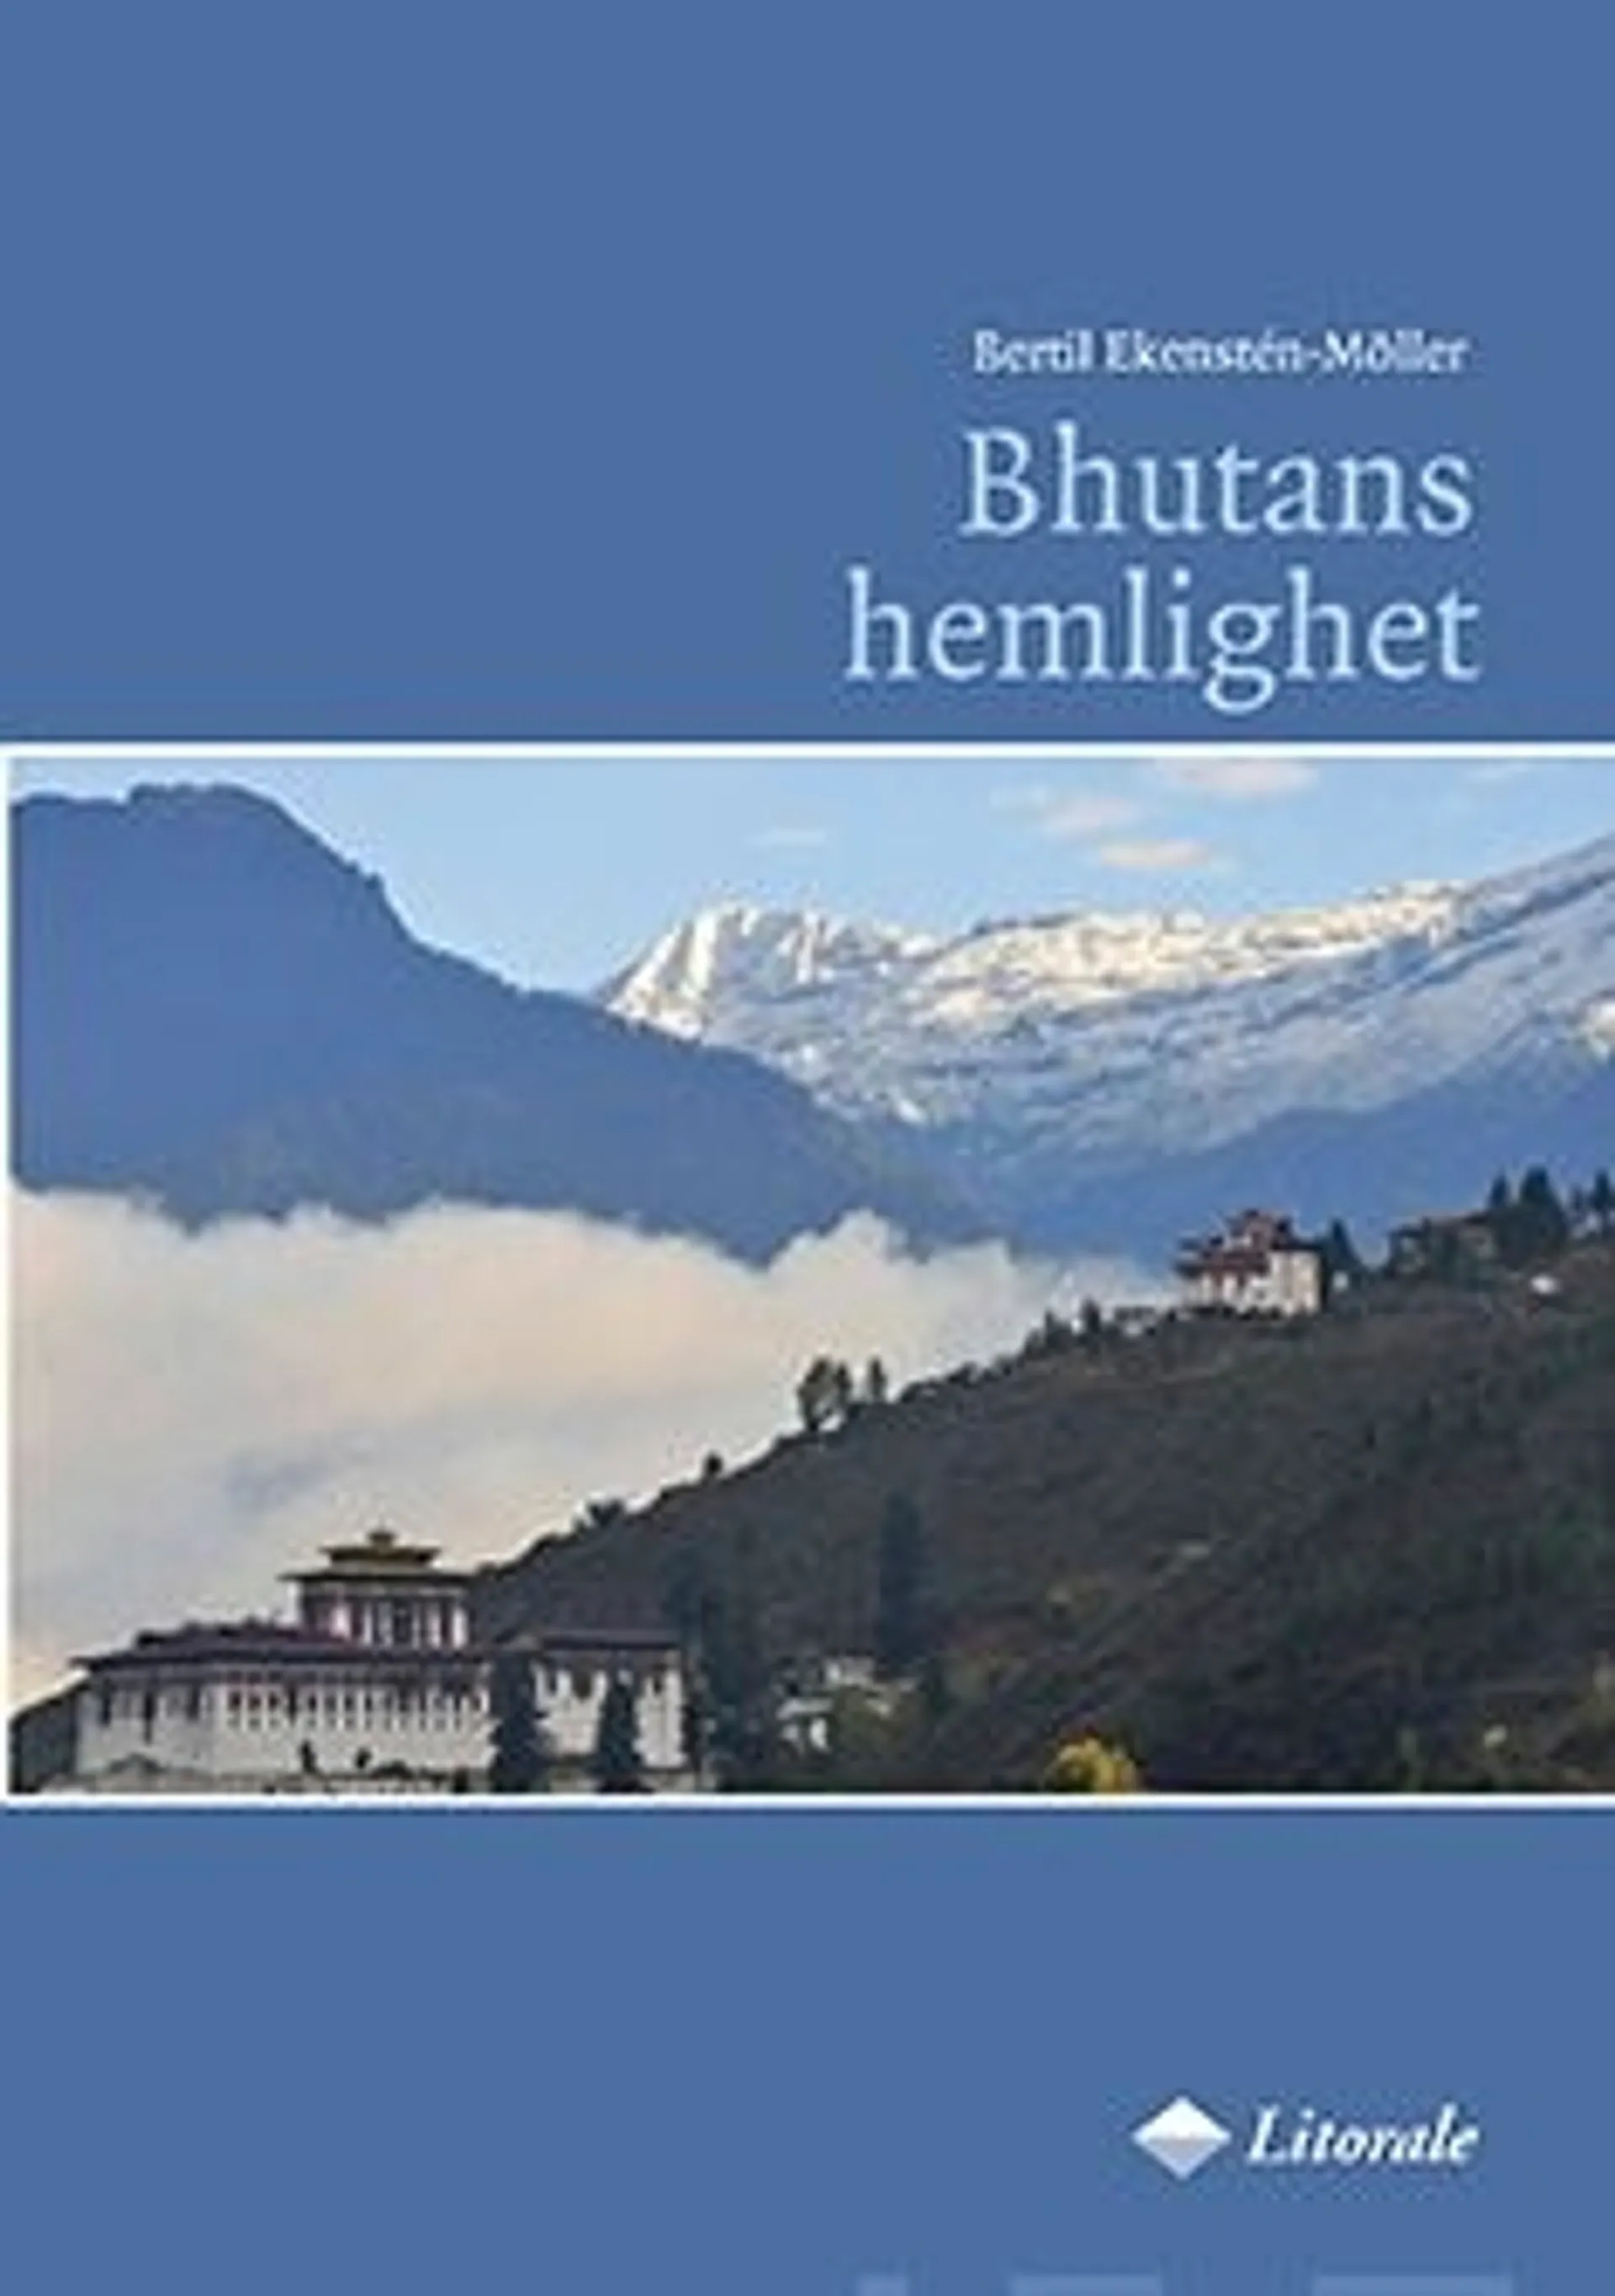 Bhutans hemlighet